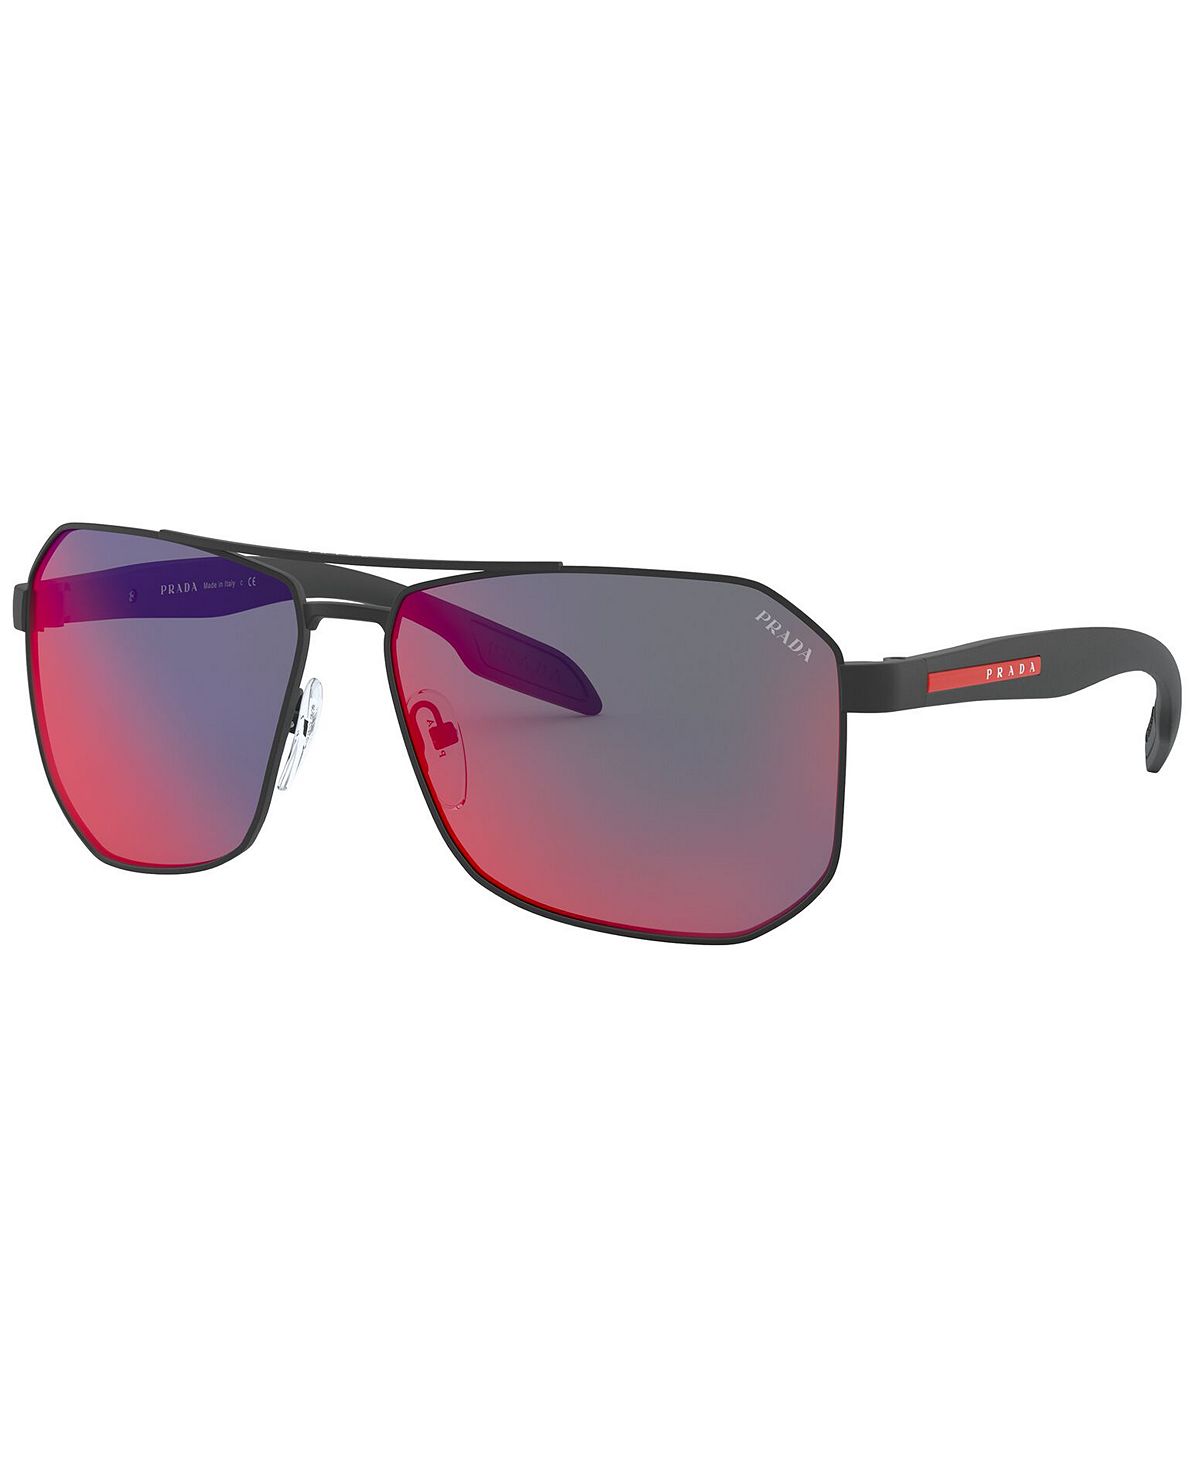 Мужские солнцезащитные очки, PS 51VS 62 PRADA LINEA ROSSA